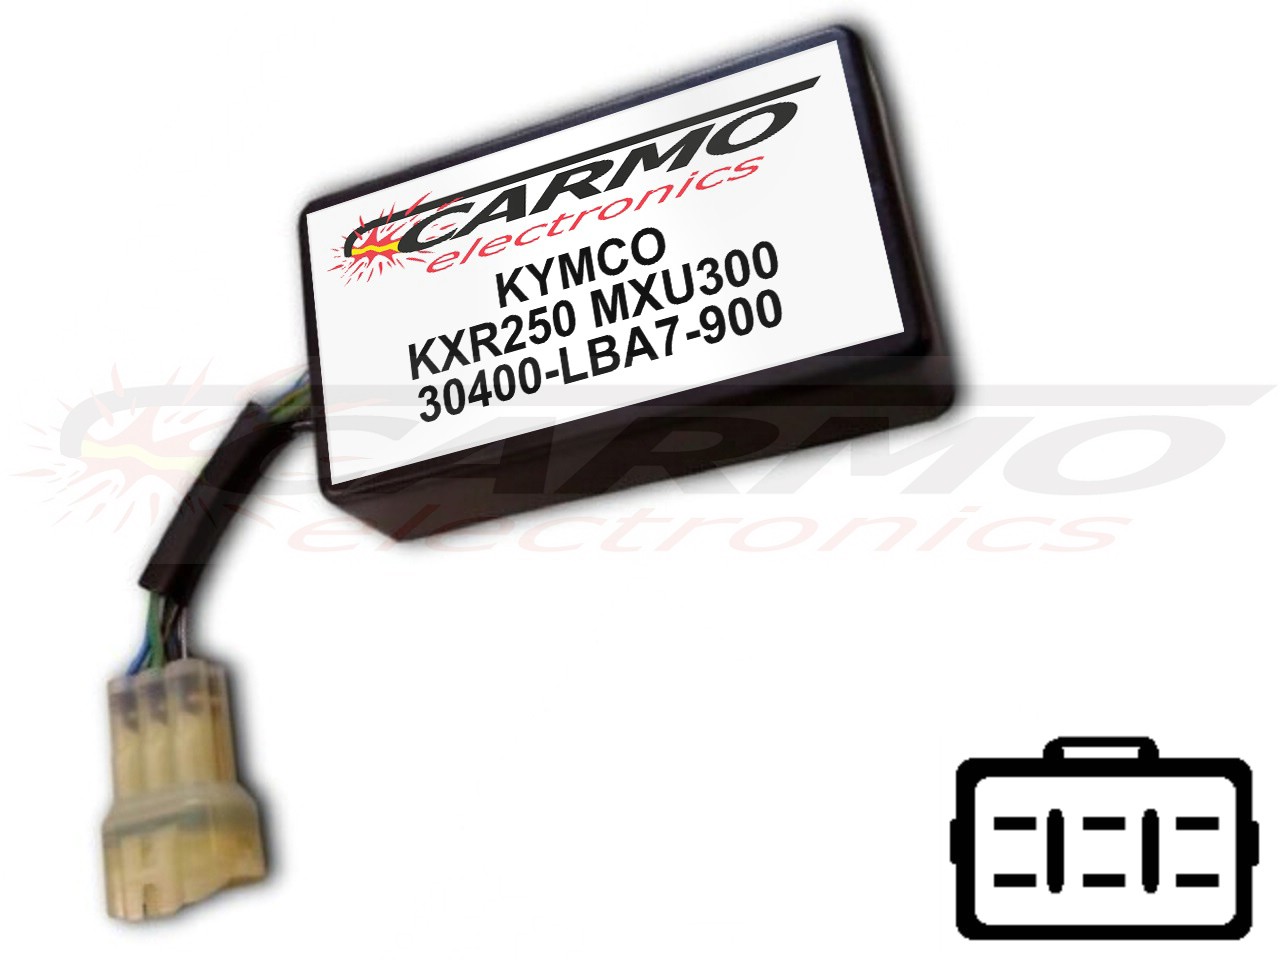 Kymco KXR250 MXU250 TCI CDI unidad de control (30400-LBA7-900, CT-LBA7-00) - Haga click en la imagen para cerrar